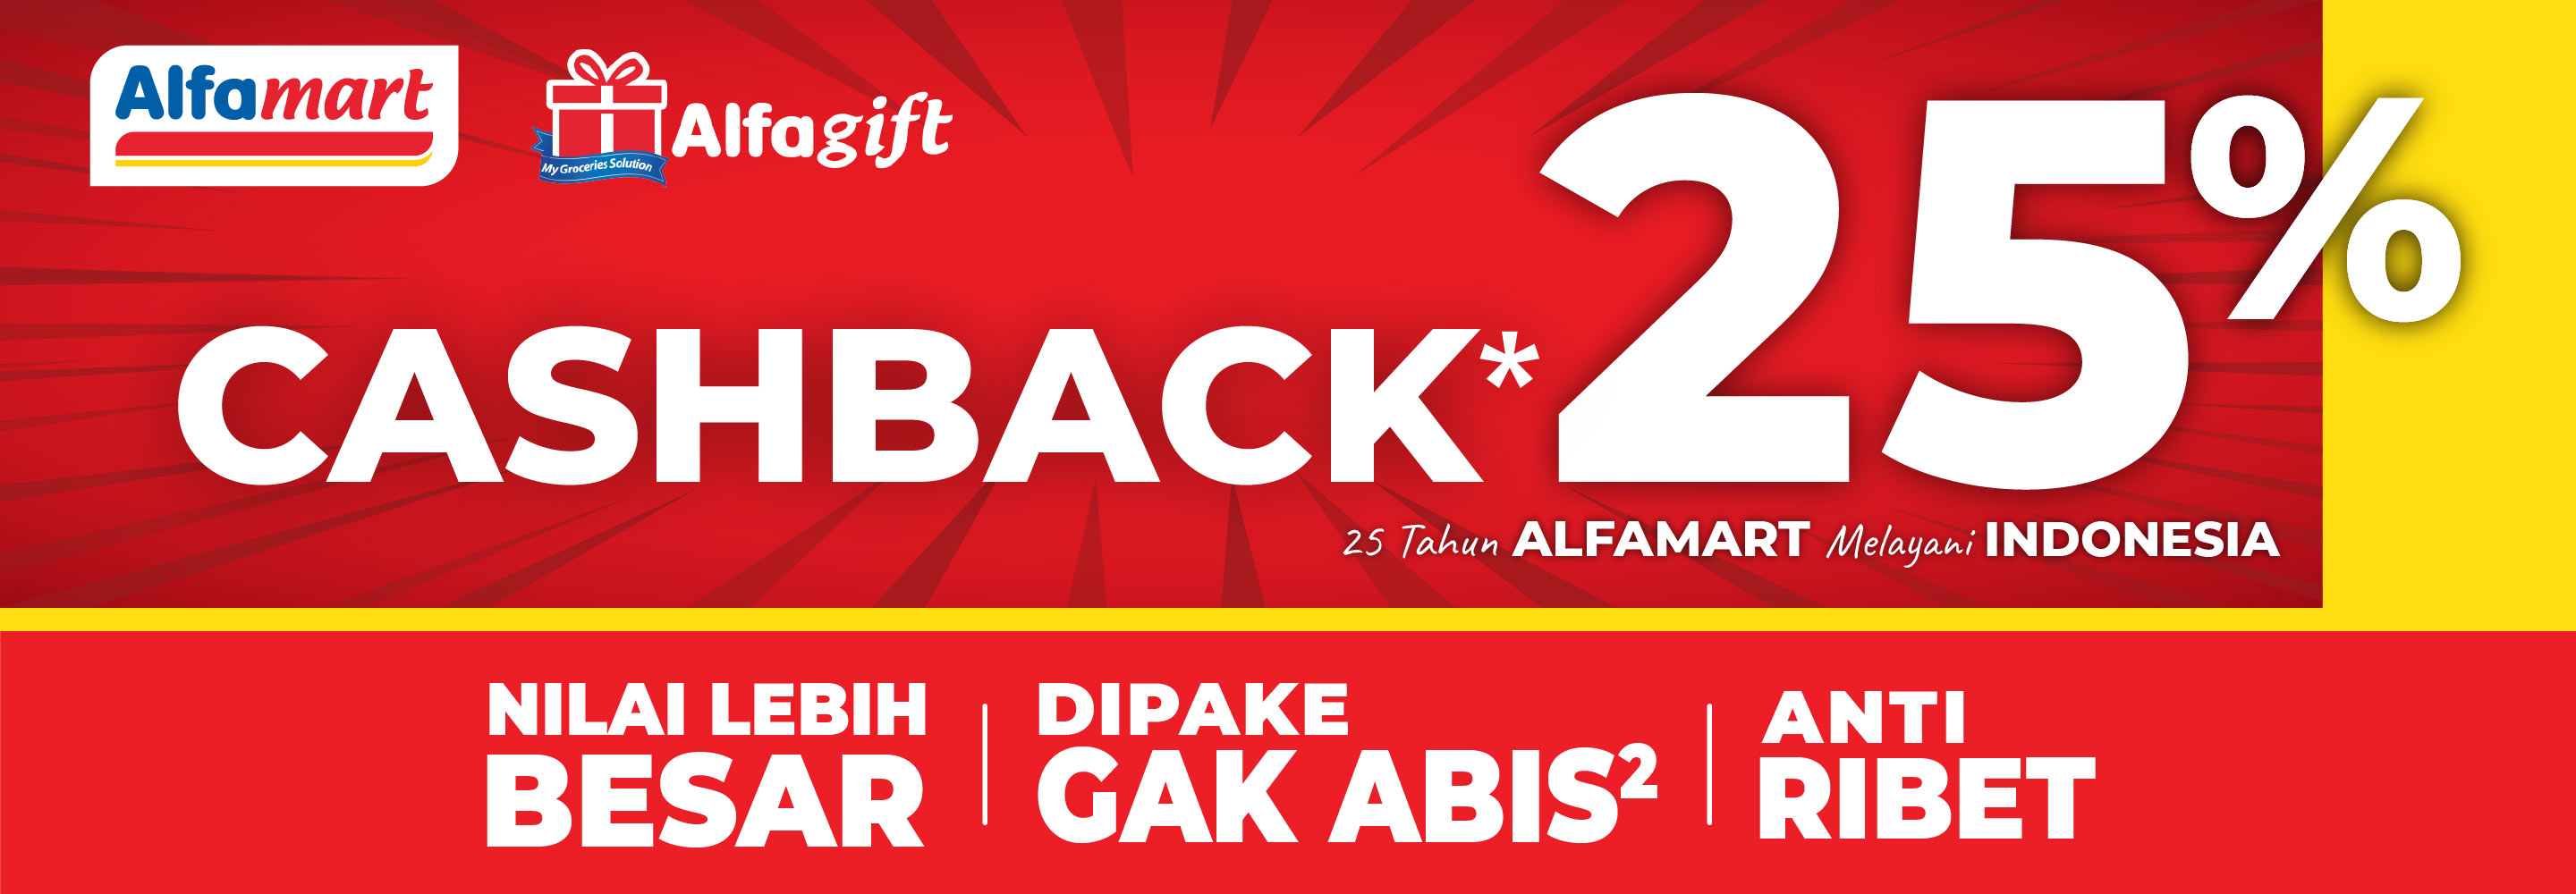 Banner promo CASBACK 25% Alfamart